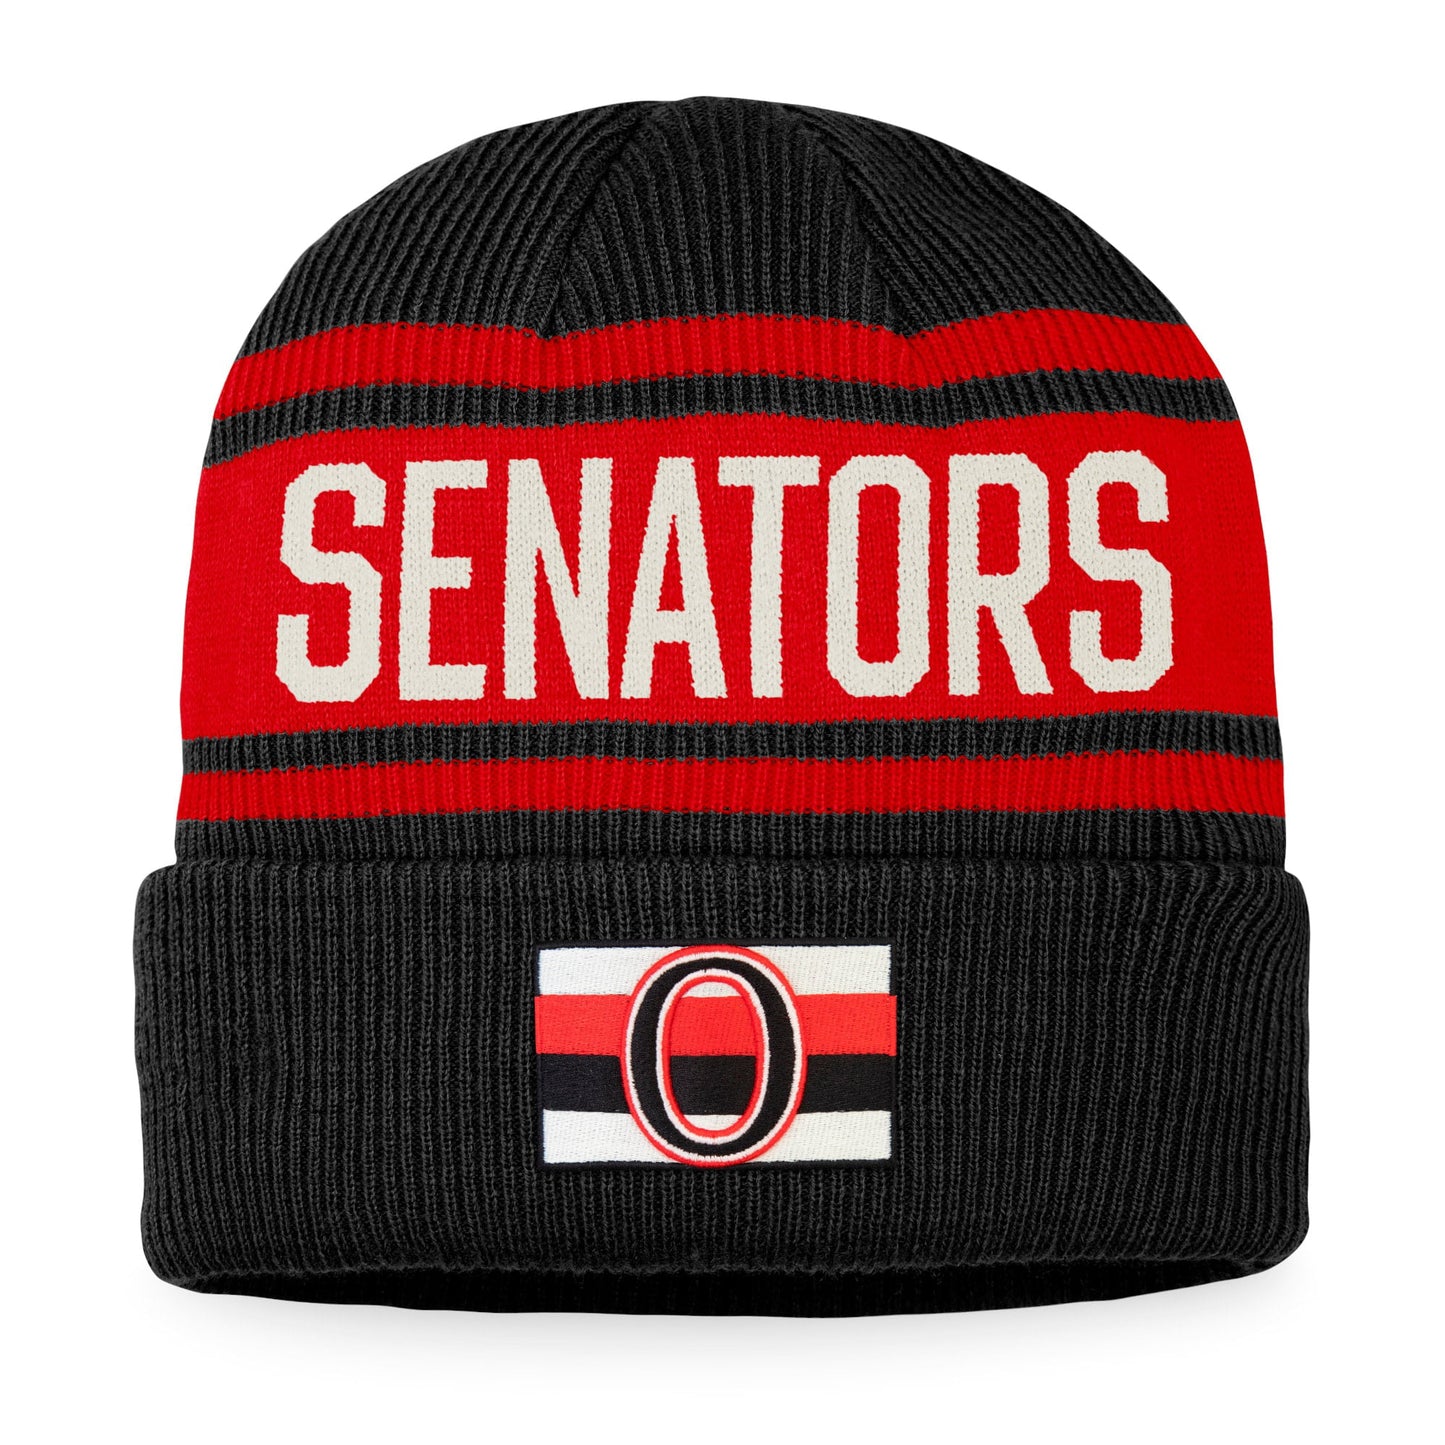 Men's Fanatics Branded Black/Red Ottawa Senators True Classic Retro Cuffed Knit Hat - OSFA